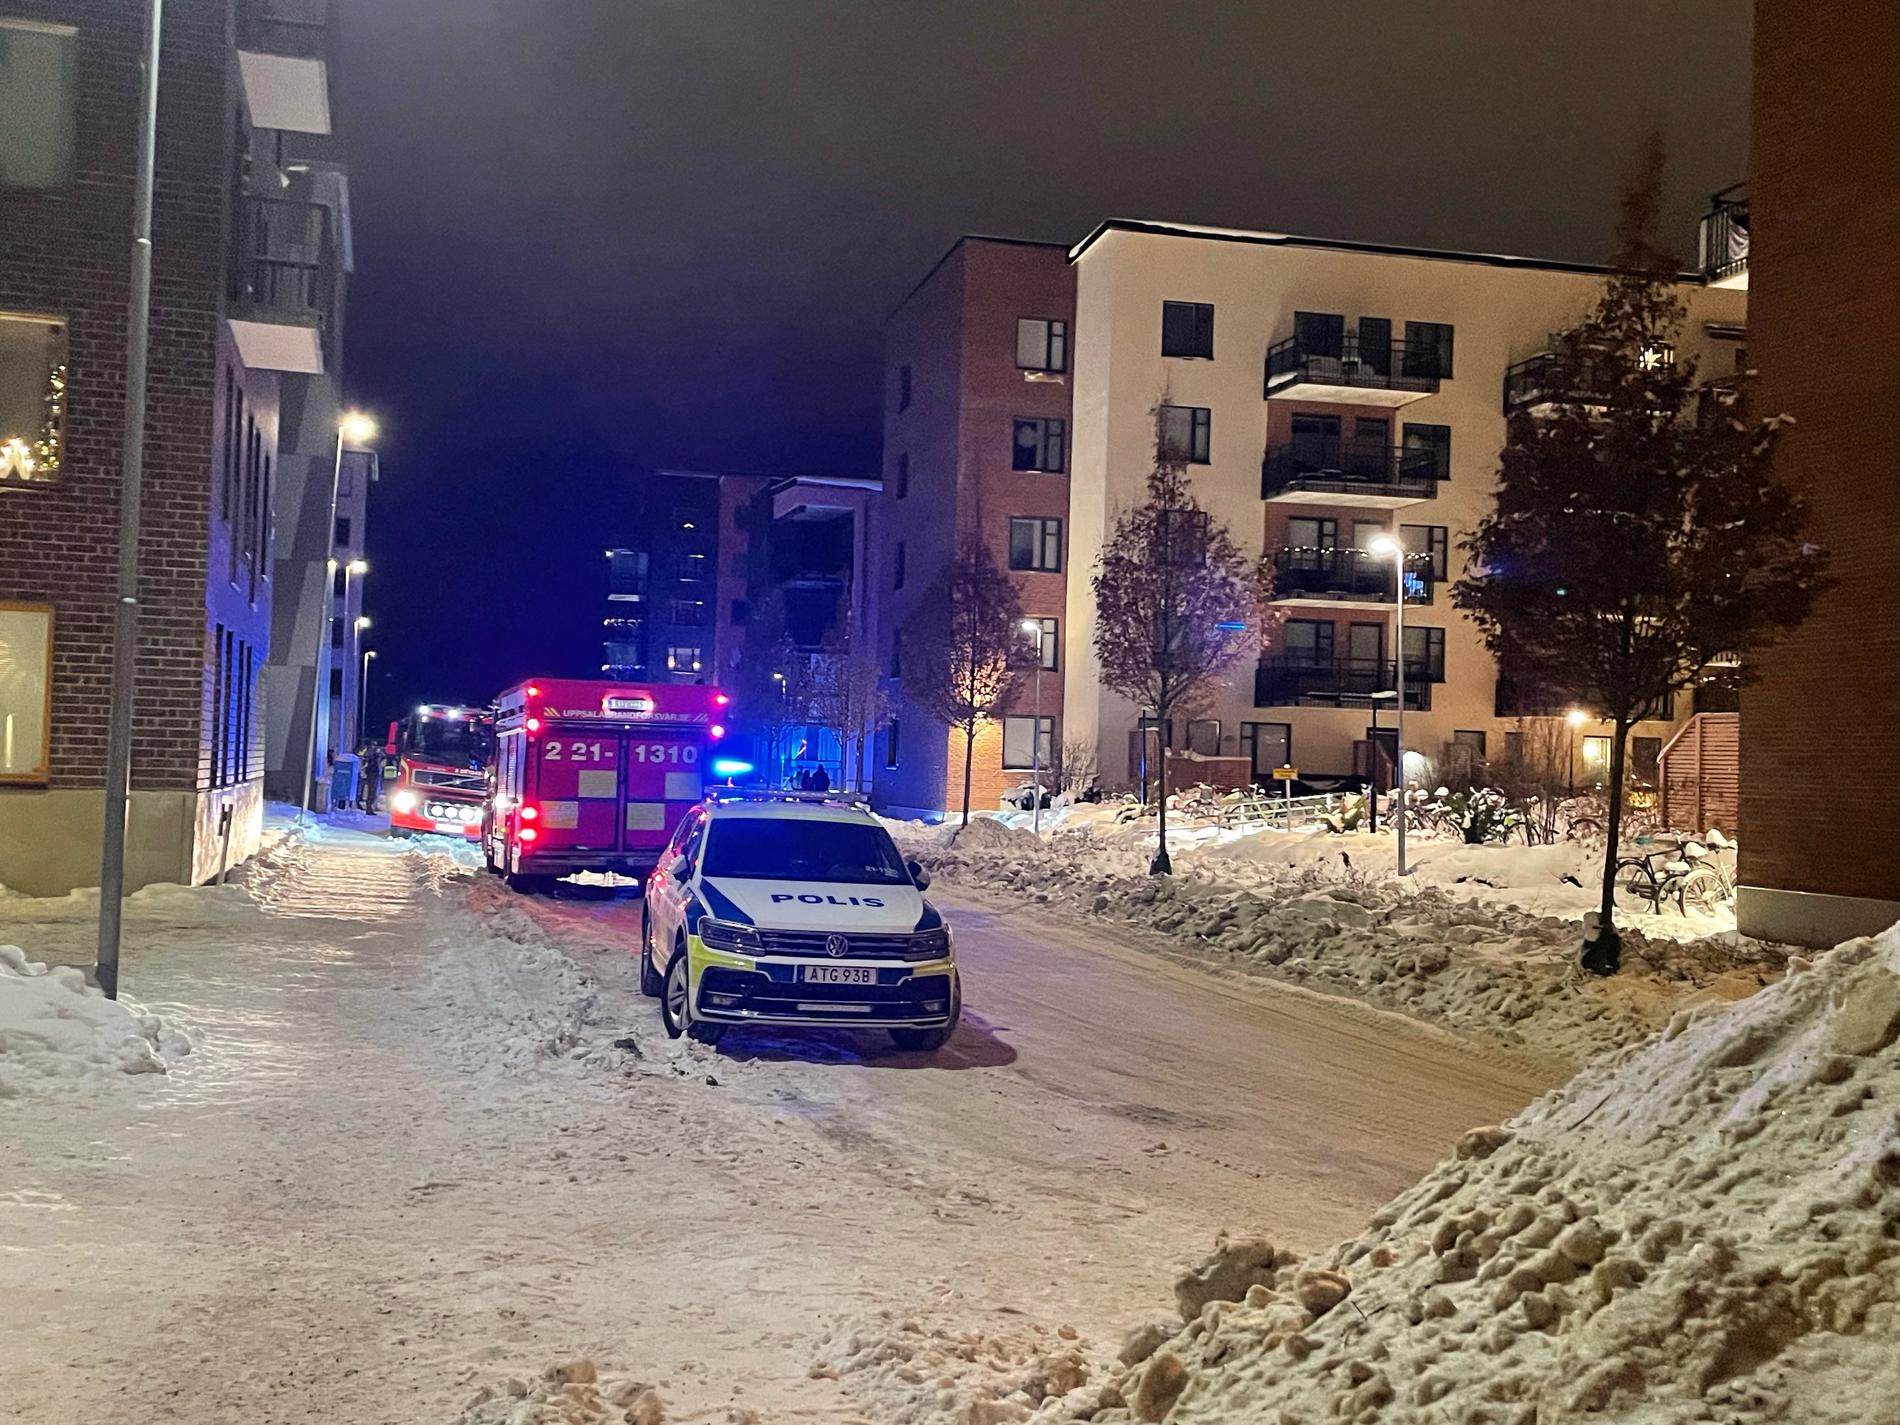 Sprängning utanför bostadsområde i Uppsala